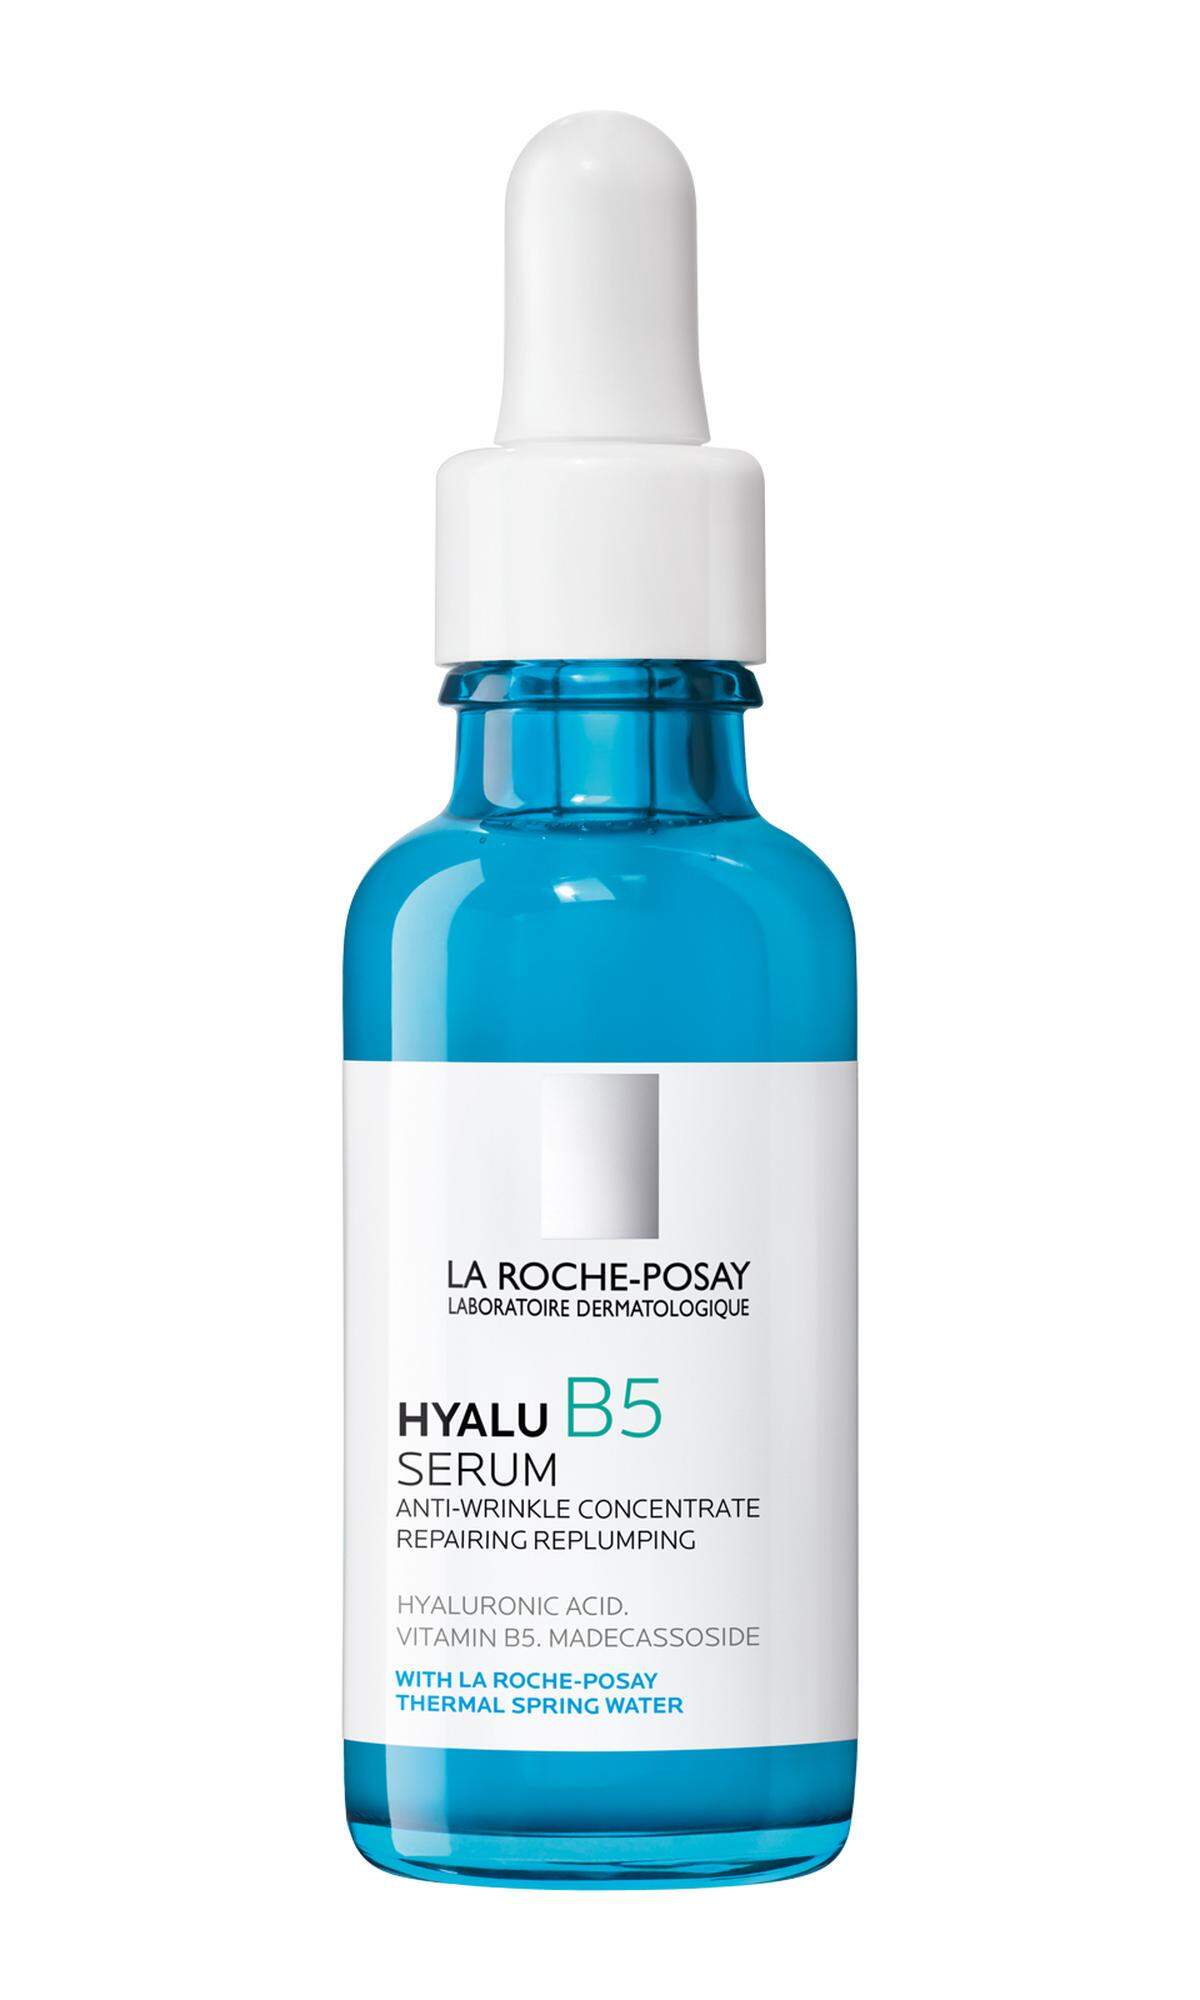 Serum-Konzentrat „Hyalu B5“ von La ­Roche-Posay, 30 ml, 31,99 Euro.